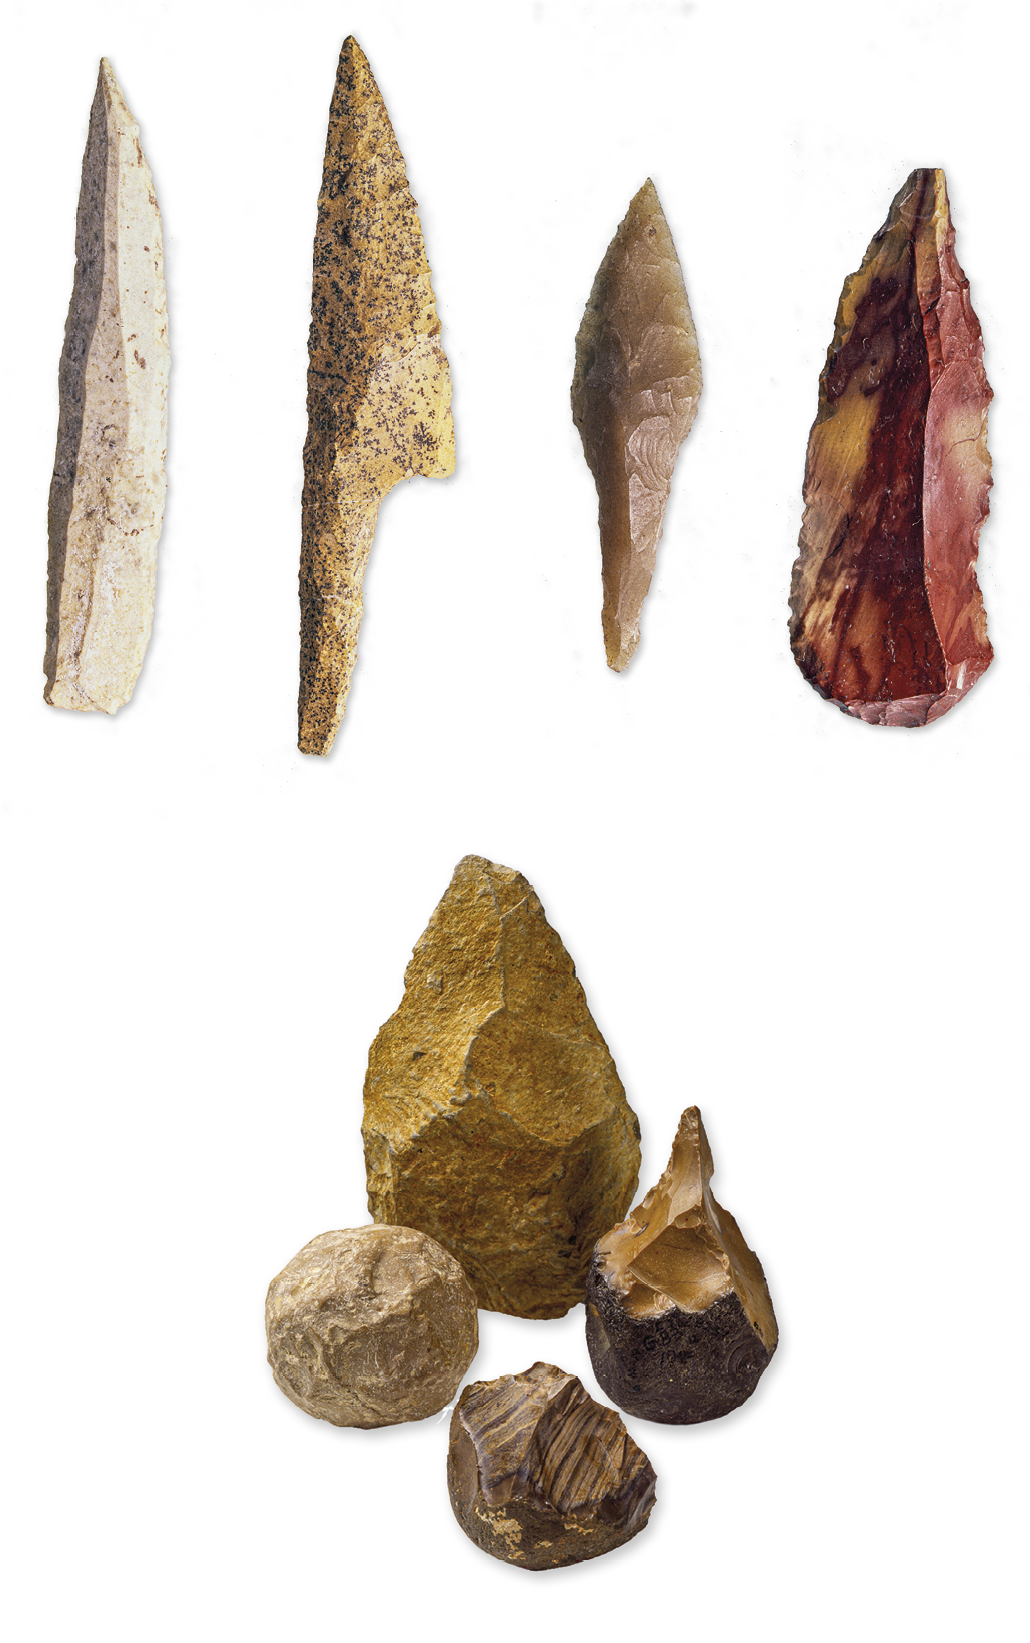 Fotografia. Diferentes artefatos de pedra. Na parte superior, lado a lado, quatro objetos pontiagudos, Na parte inferior, reunidos, quatro objetos redondos.